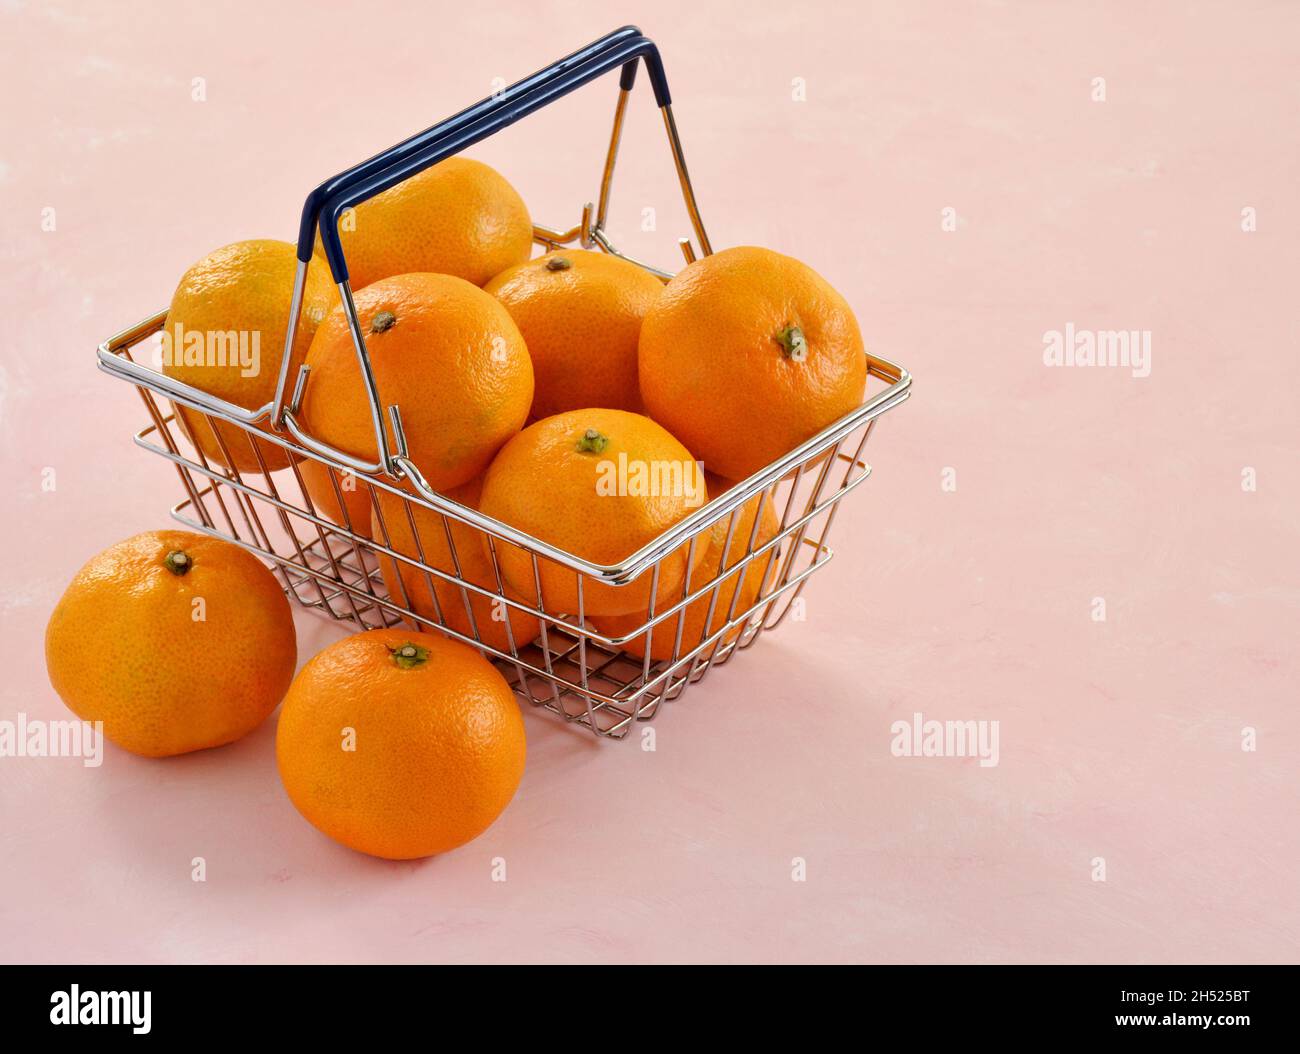 Orange vif mandarine orange dans un mini panier sur fond rose pâle.Format horizontal avec espace pour le texte. Banque D'Images